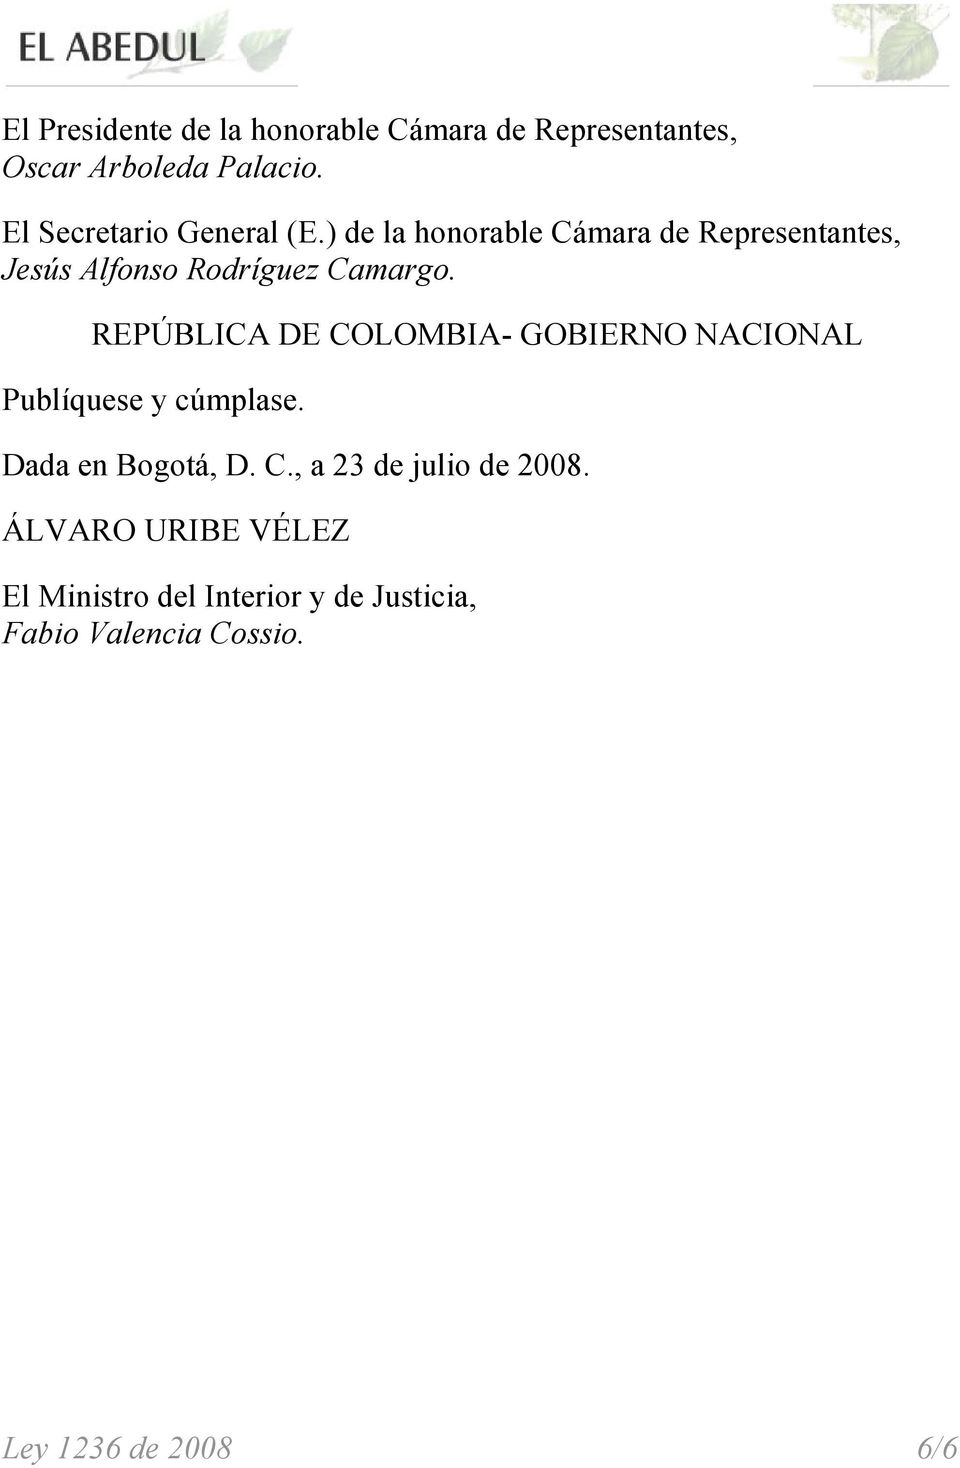 ) de la honorable Cámara de Representantes, Jesús Alfonso Rodríguez Camargo.